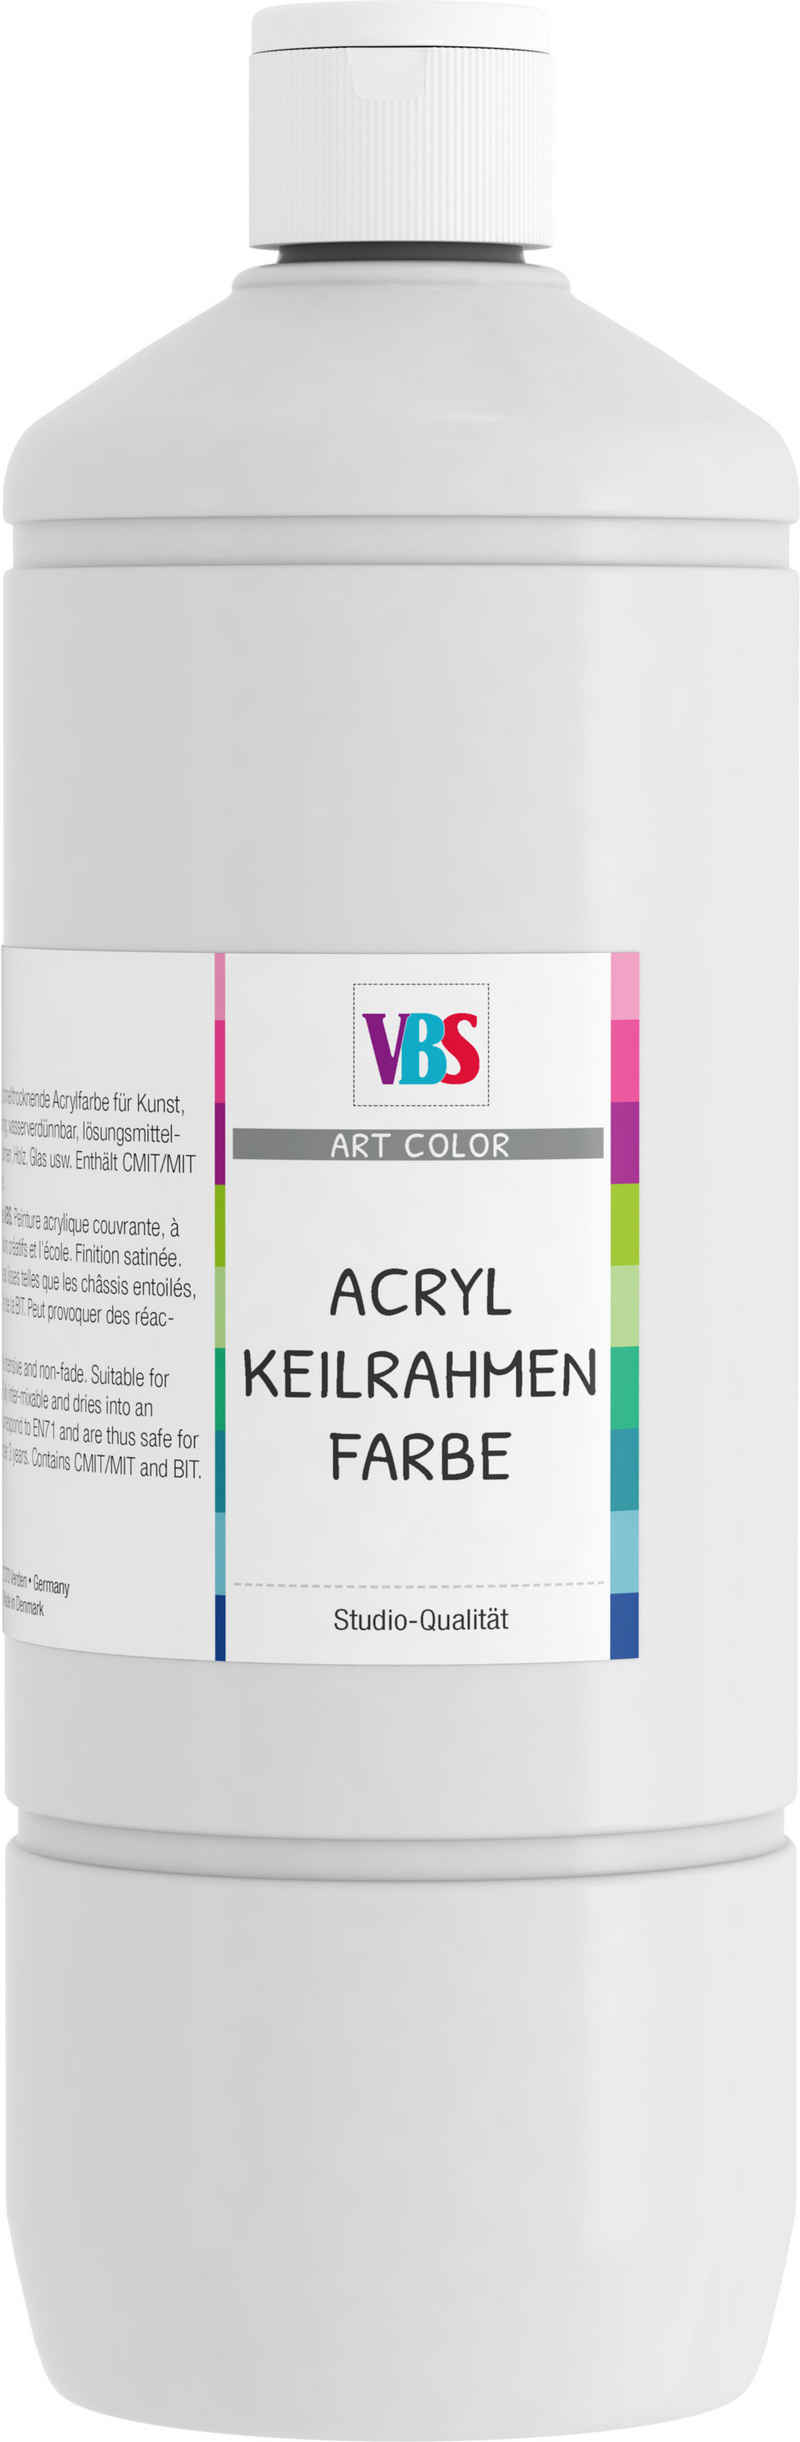 VBS Acrylfarbe Acryl-Keilrahmenfarbe, 1000 ml